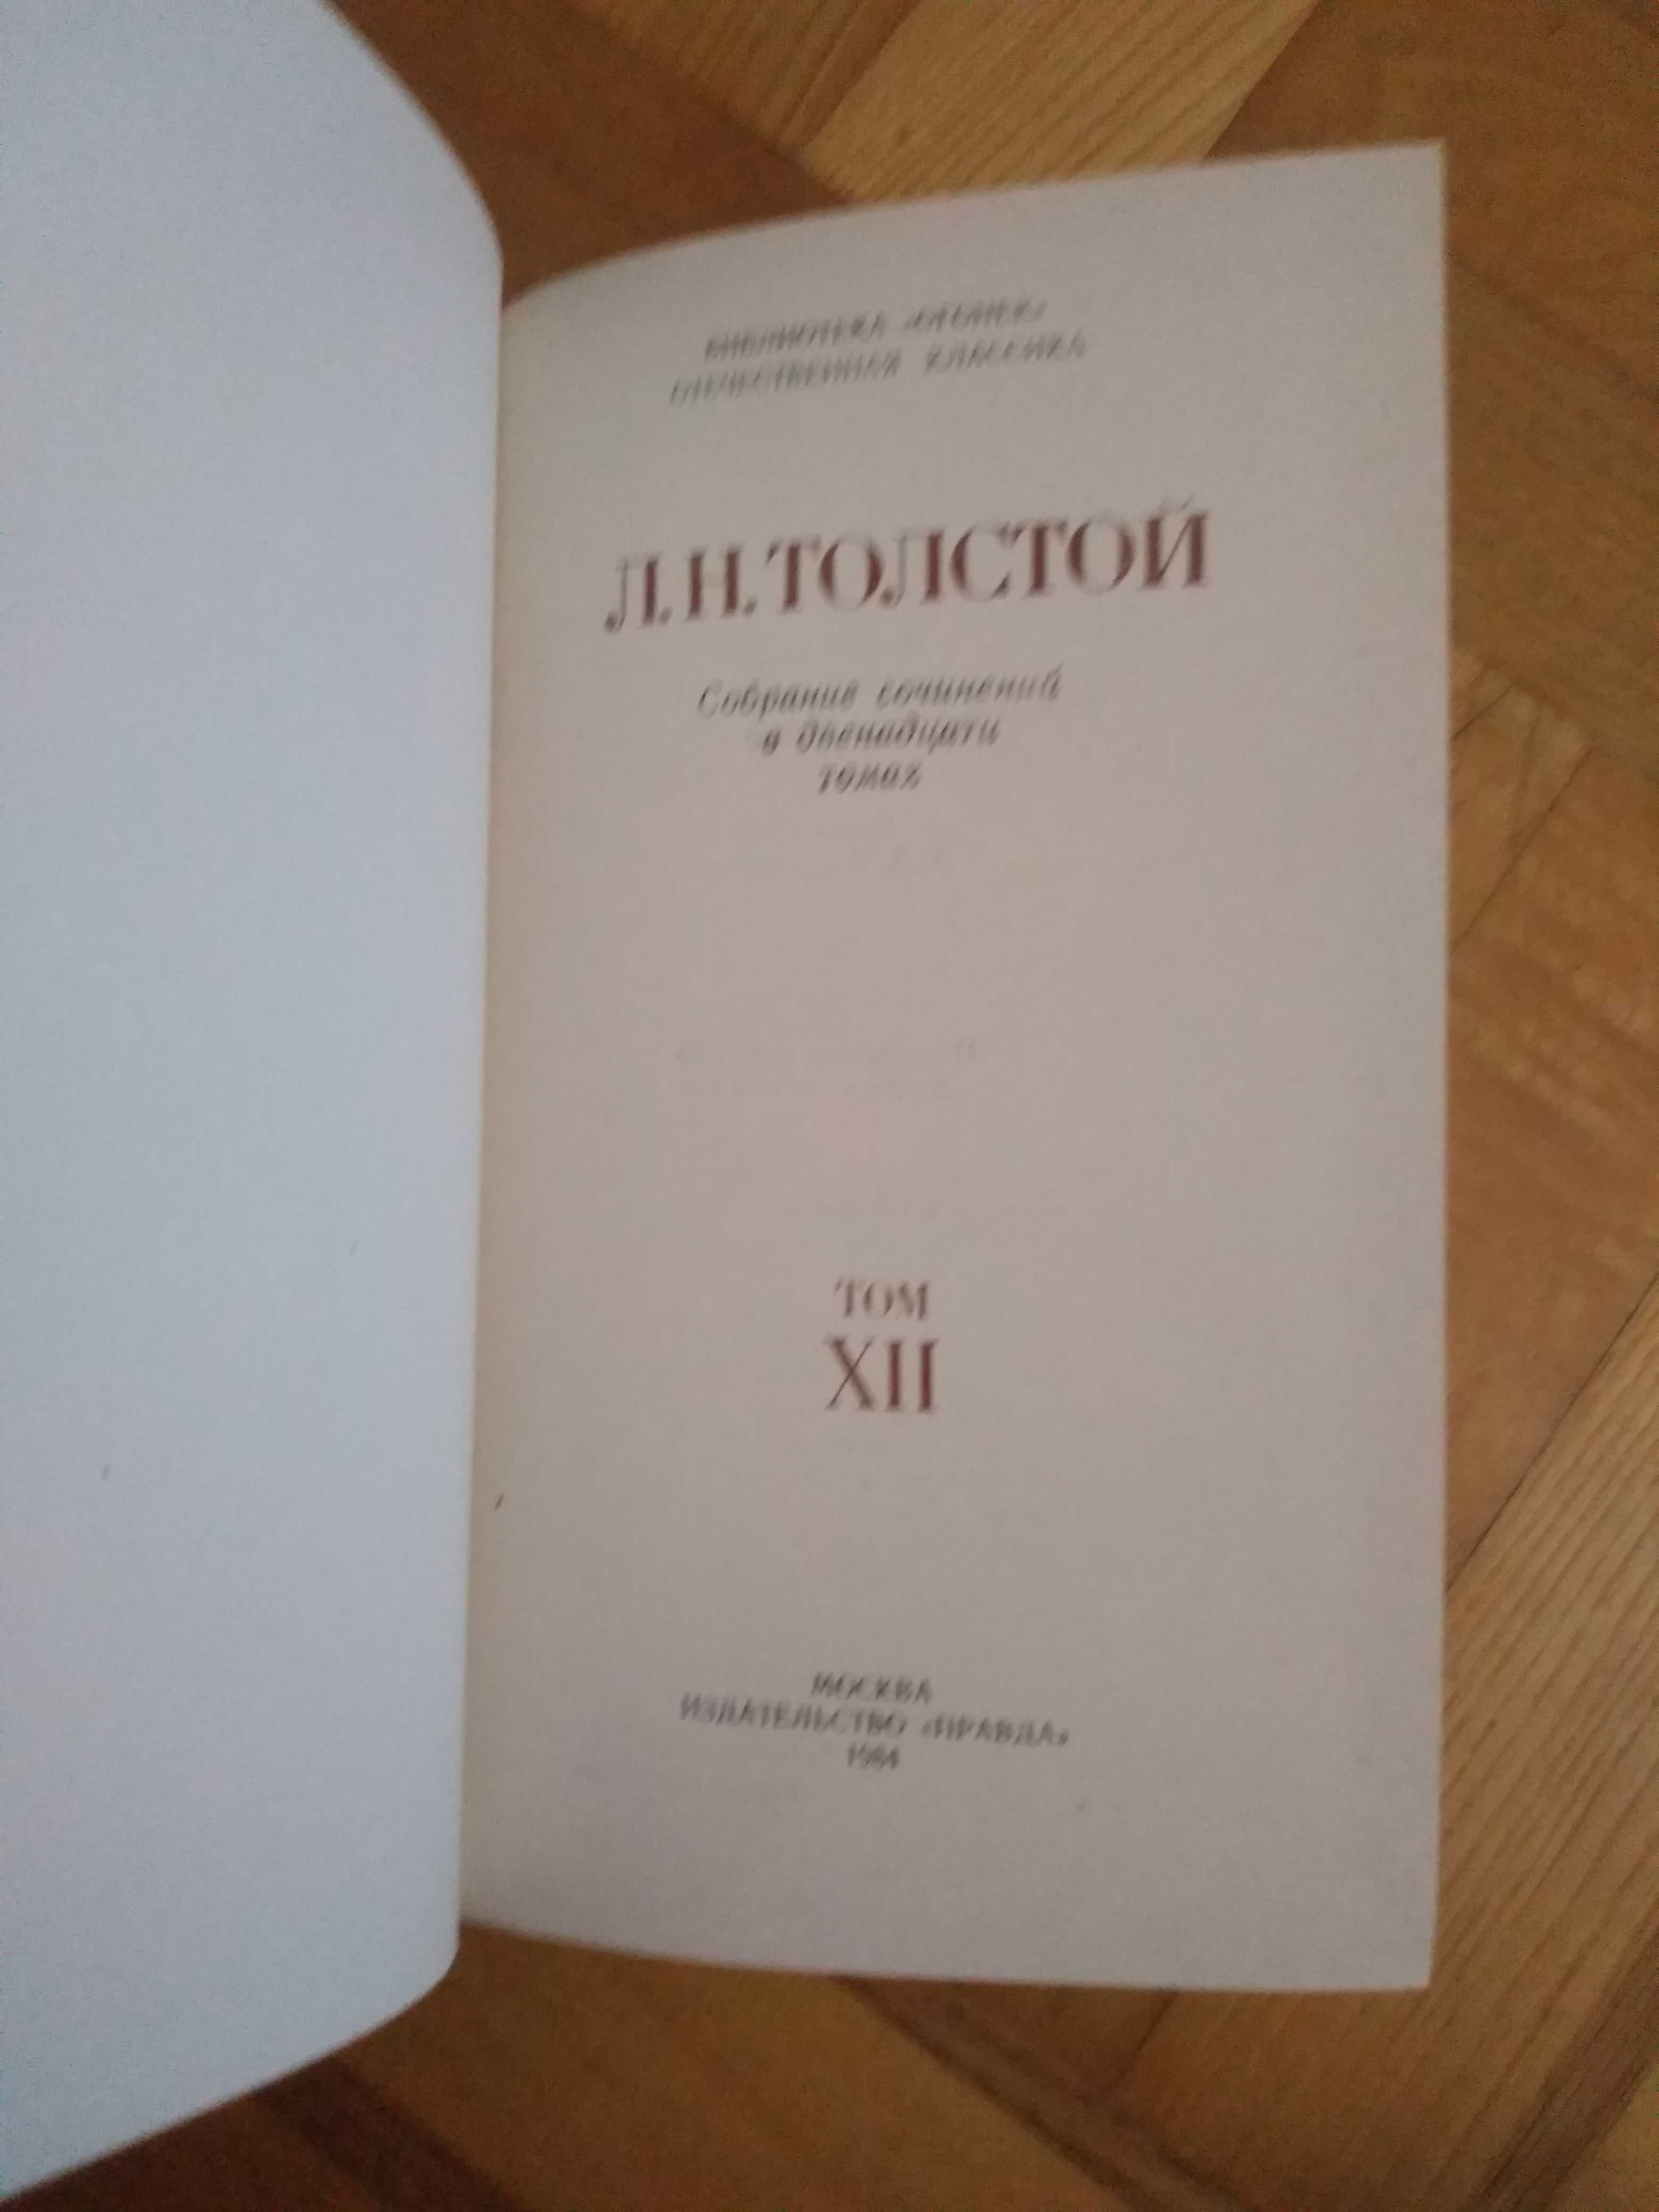 Лев Толстой.Собрание сочинений в 12-ти томах